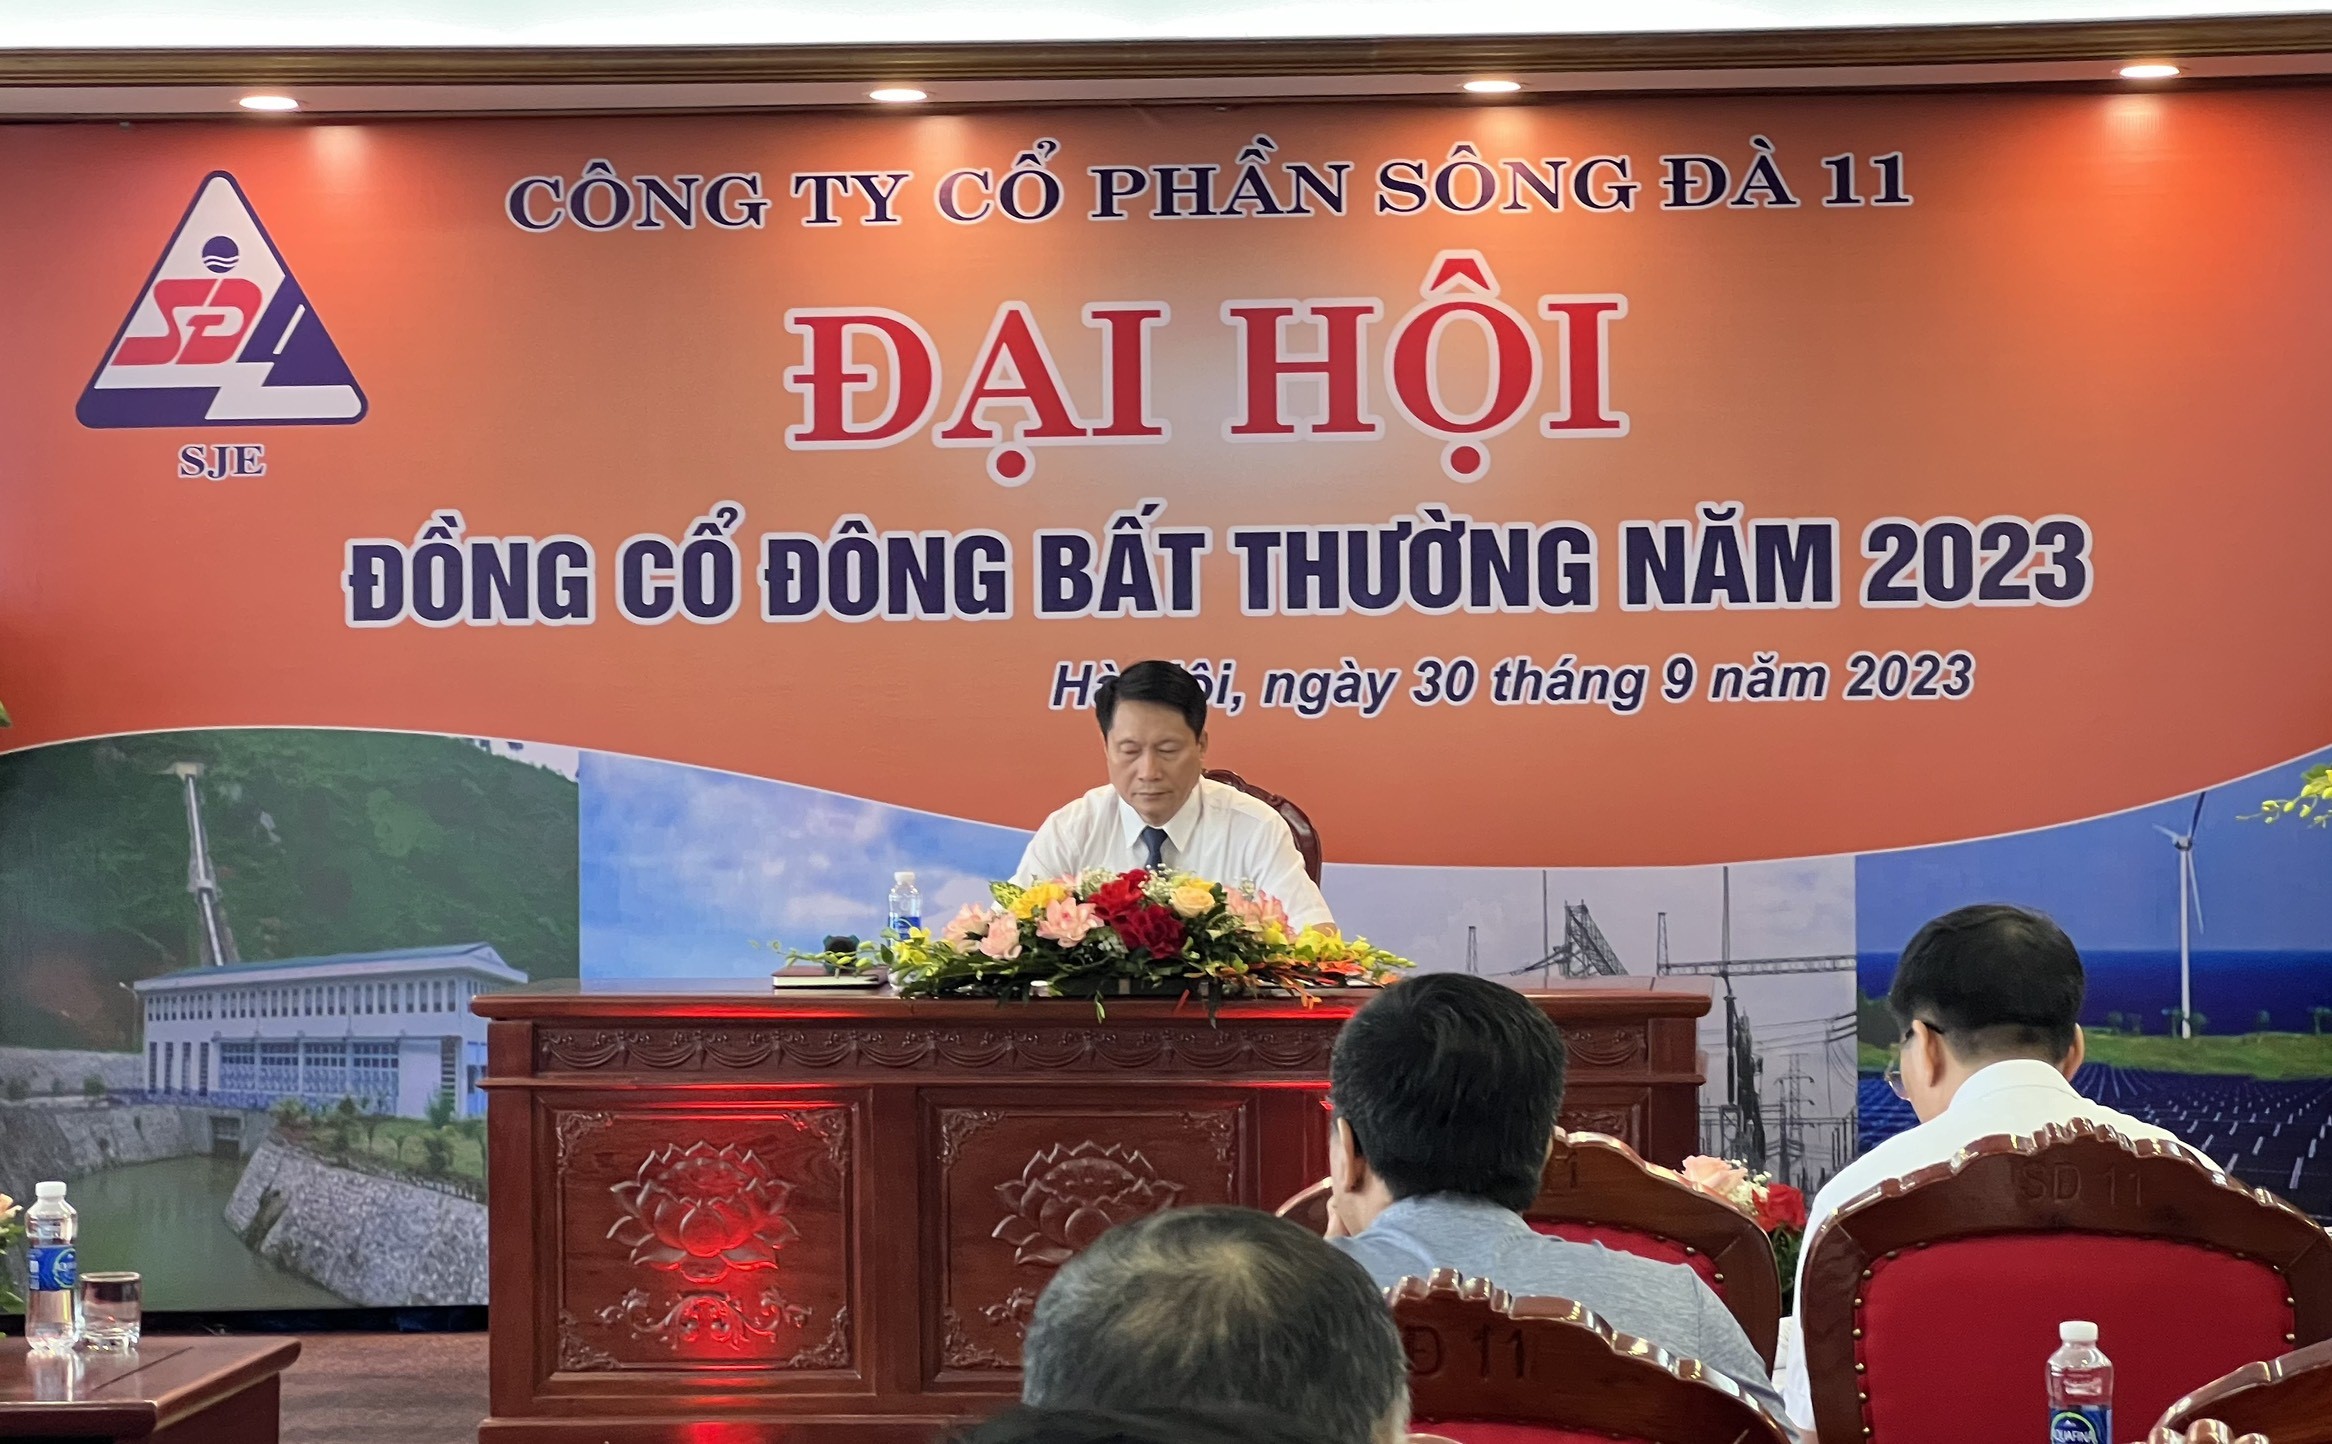 Đồng chí Nguyễn Xuân Hồng - Chủ tịch HĐQT Công ty điều hành đại hội